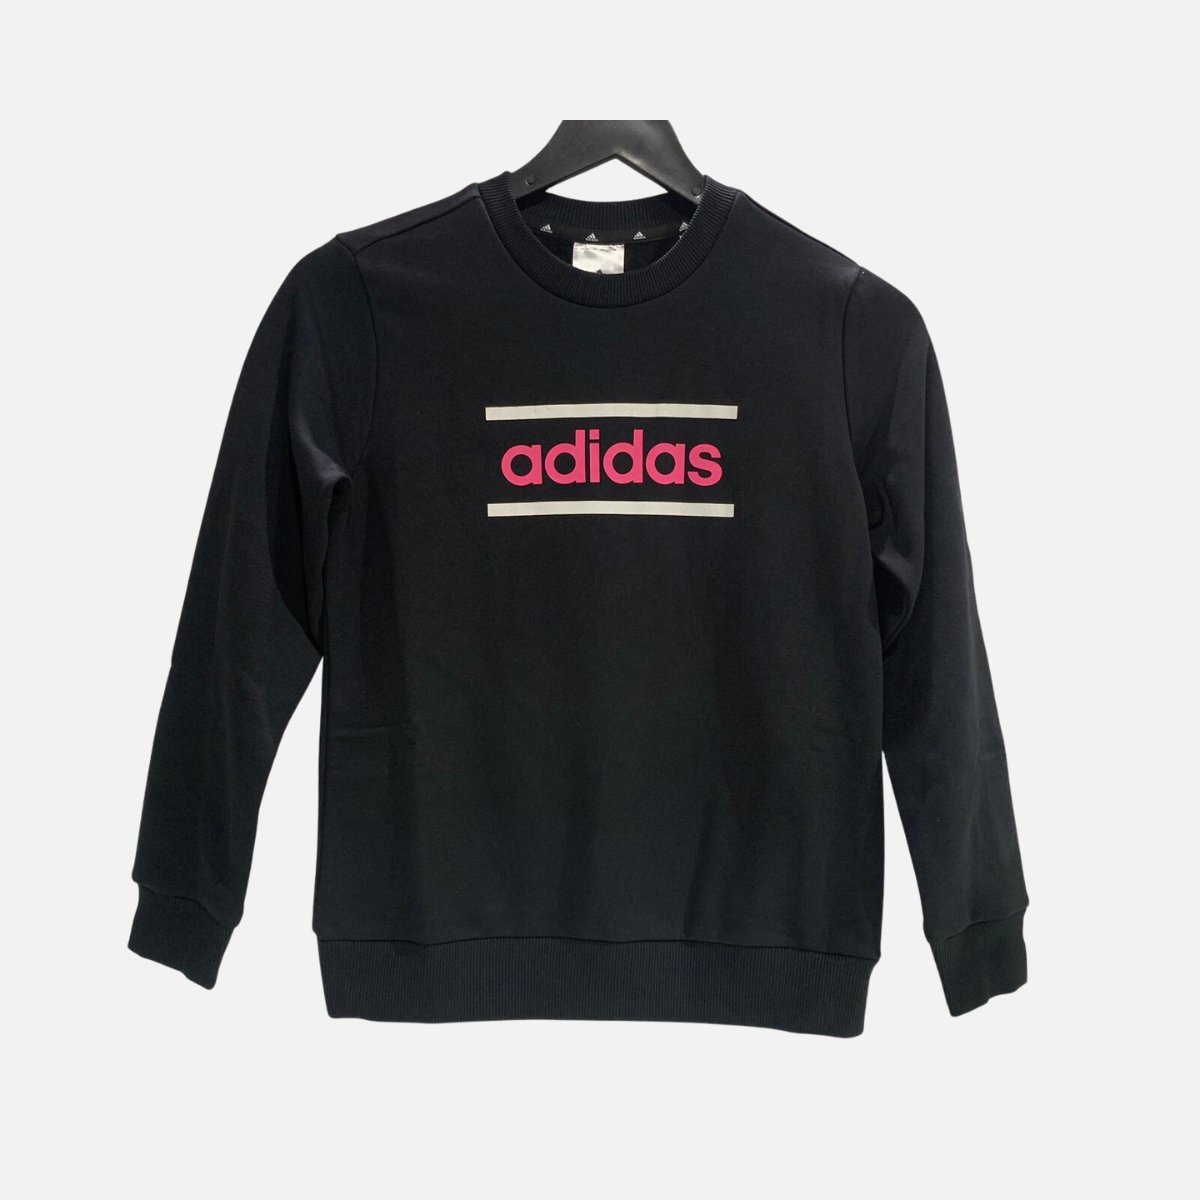 Adidas Graphic Kids Girl Sweatshirt (7-15 Years) -Black